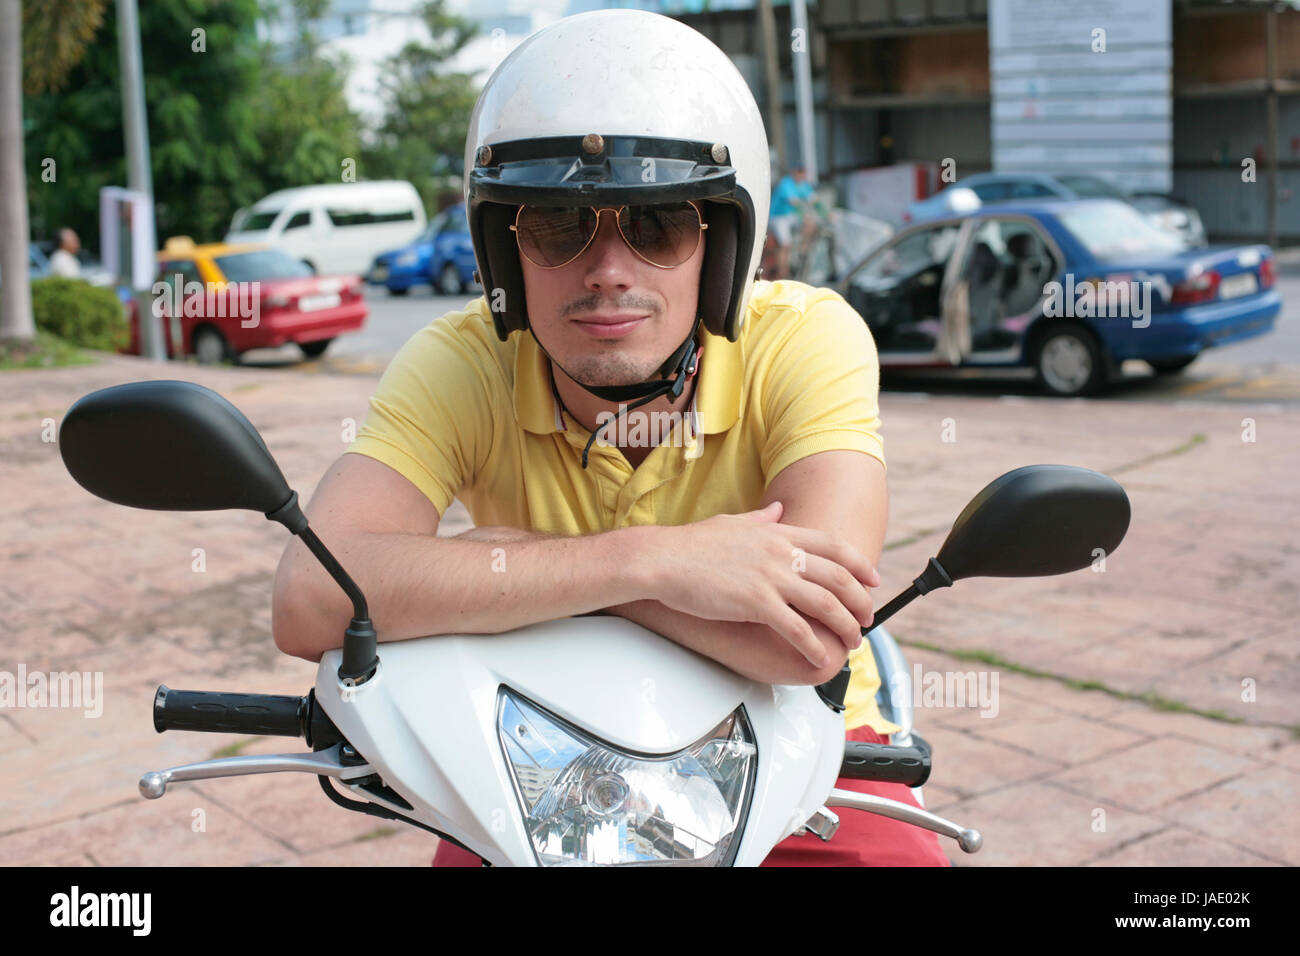 Jeune homme portant des lunettes de soleil sur un scooter Photo Stock -  Alamy